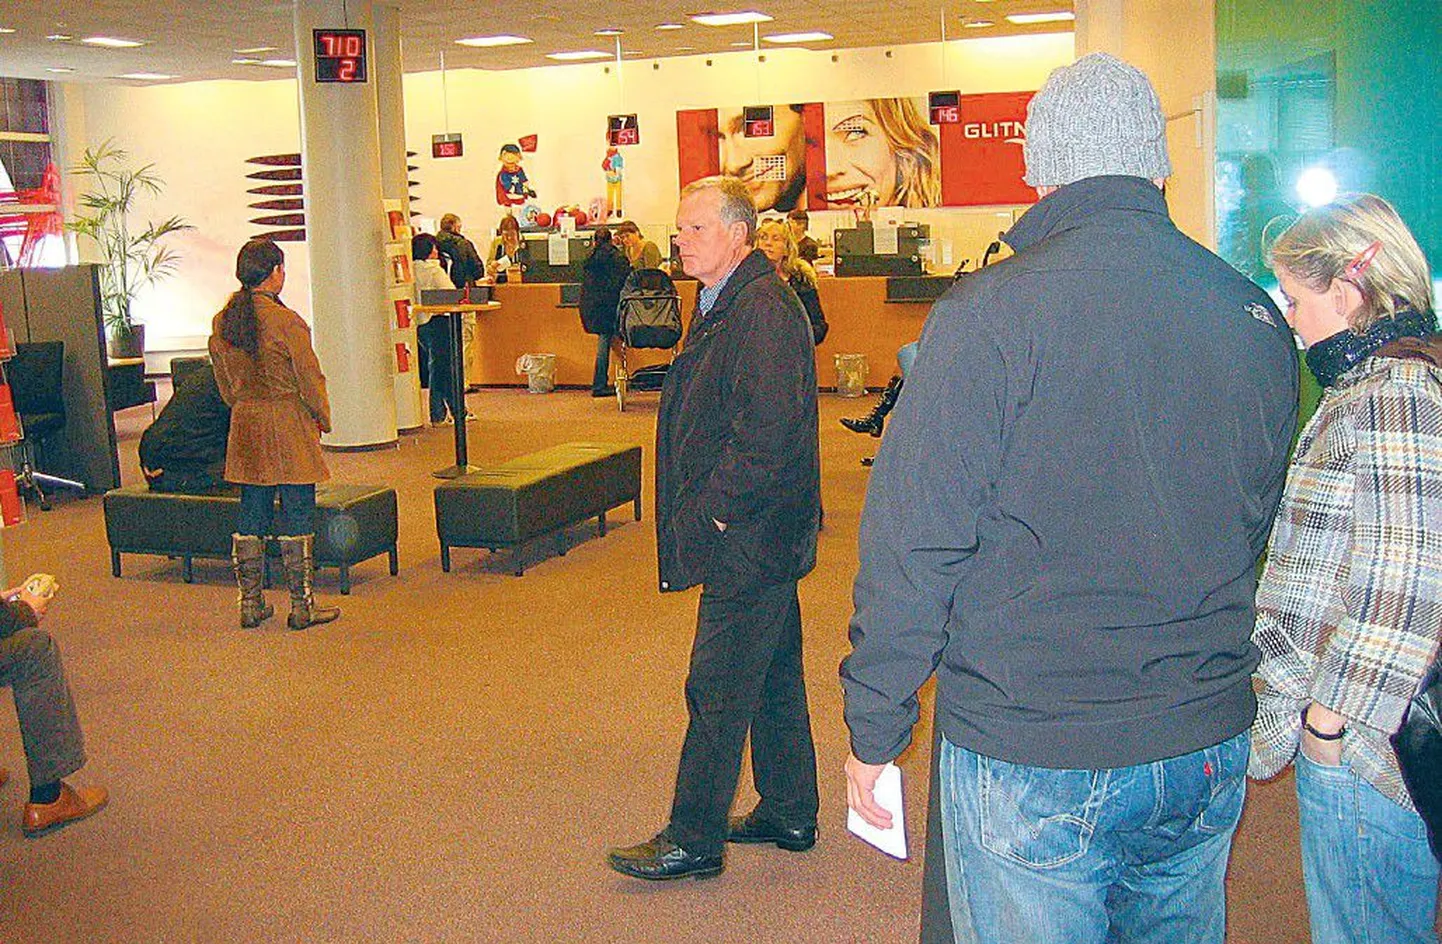 Riigistatud Glitniri pangakontor Reykjavikis. Rahvast täis kontoris olid kõigil näod tõsised, telleritega suheldi närviliselt.